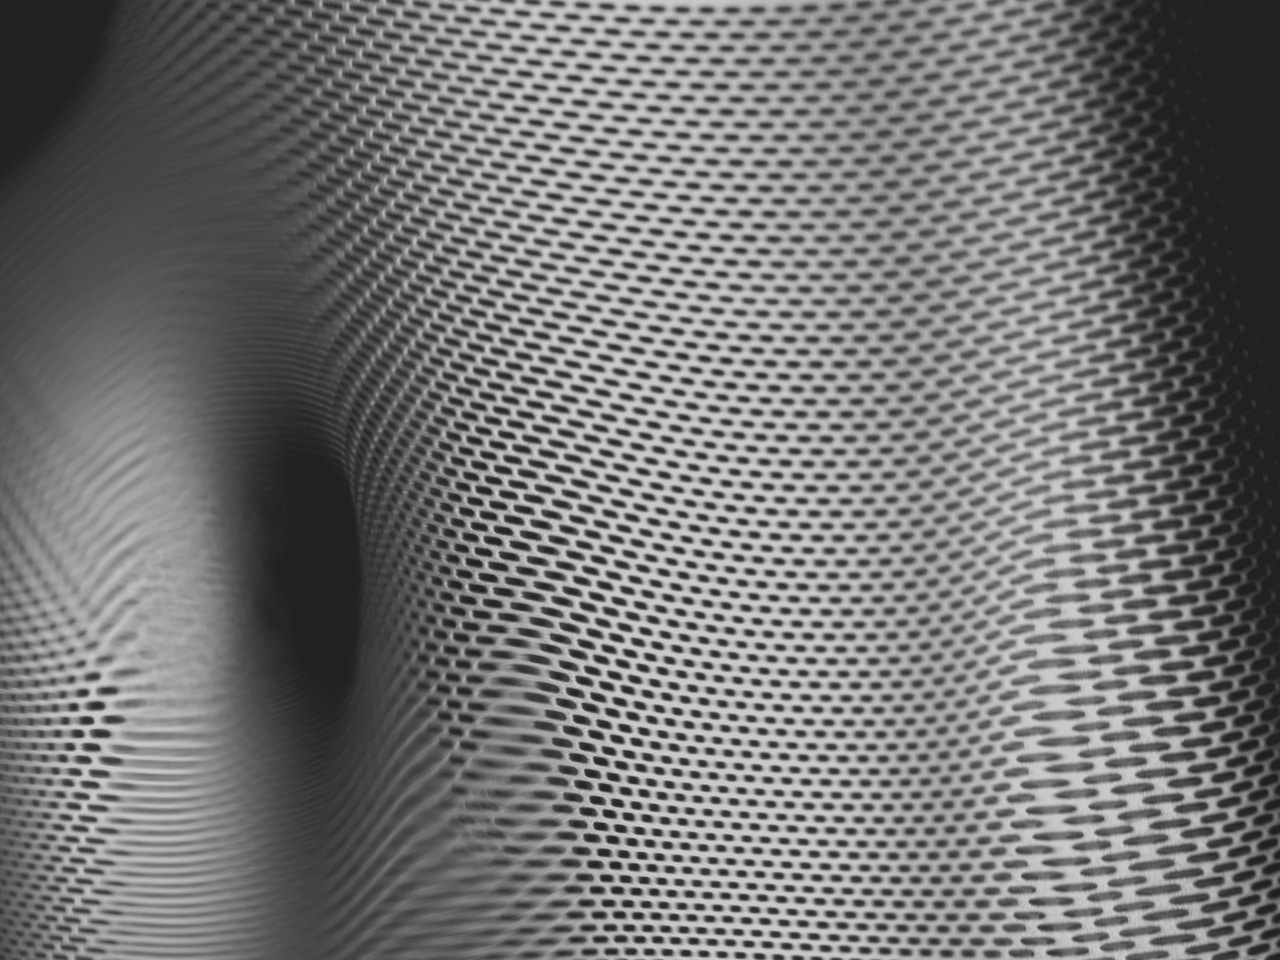 Uma imagem de uma superfície metálica